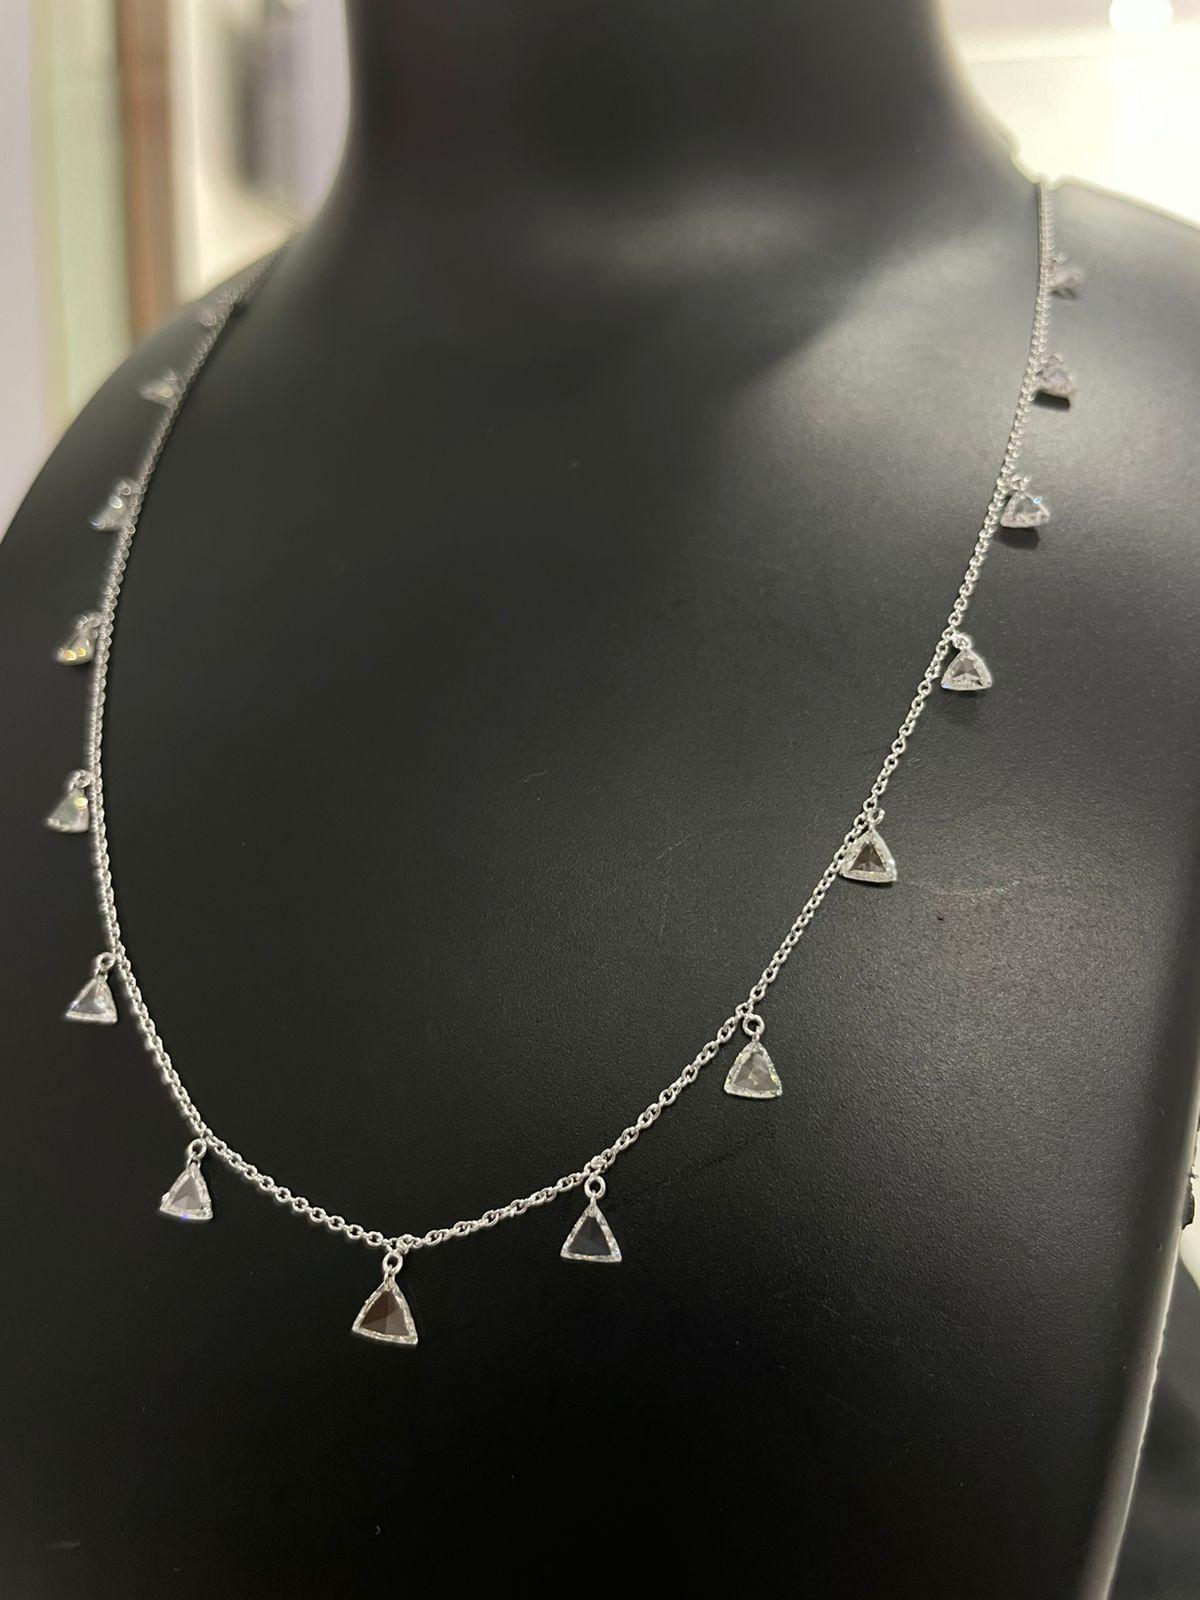 PANIM  Collier pendentif triangulaire en or blanc 18k avec diamant Rosecut

Ce collier ras du cou unique est suspendu à une chaîne en or fin 18 carats par un total de deux carats de diamants triangulaires pendants. Cet exquis collier de rosecut